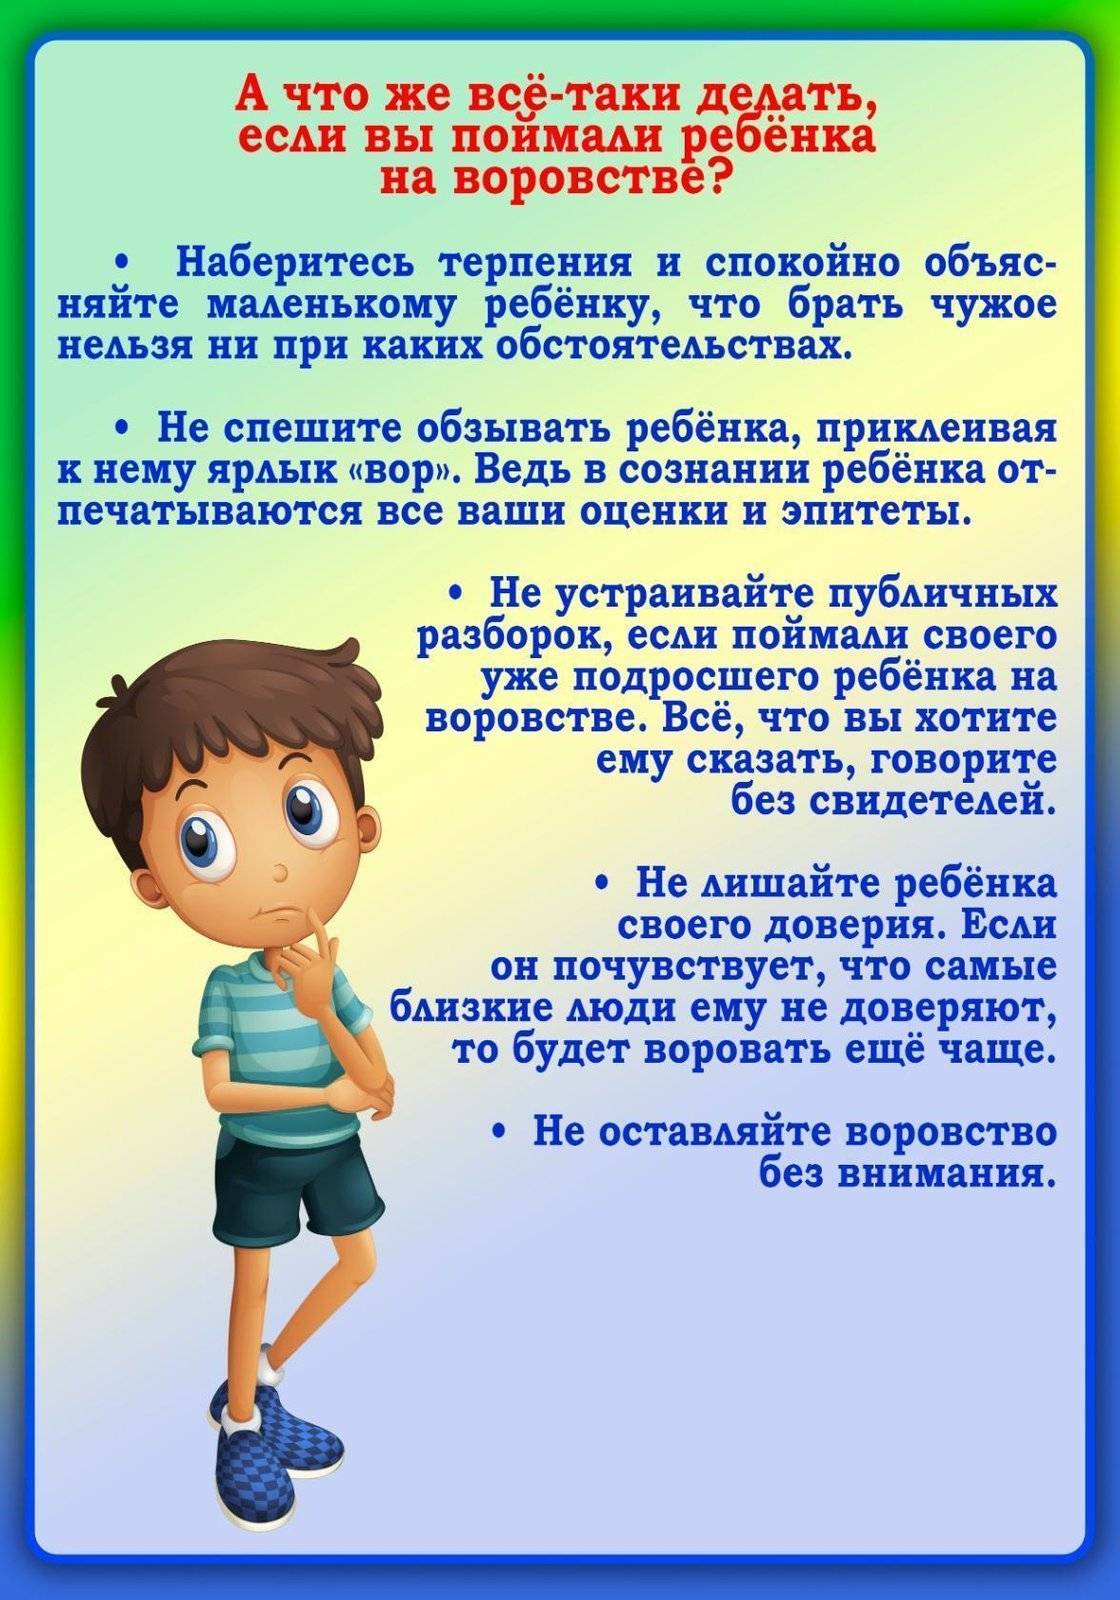 Практика запретов: как объяснить ребёнку, что нельзя делать - onwomen.ru